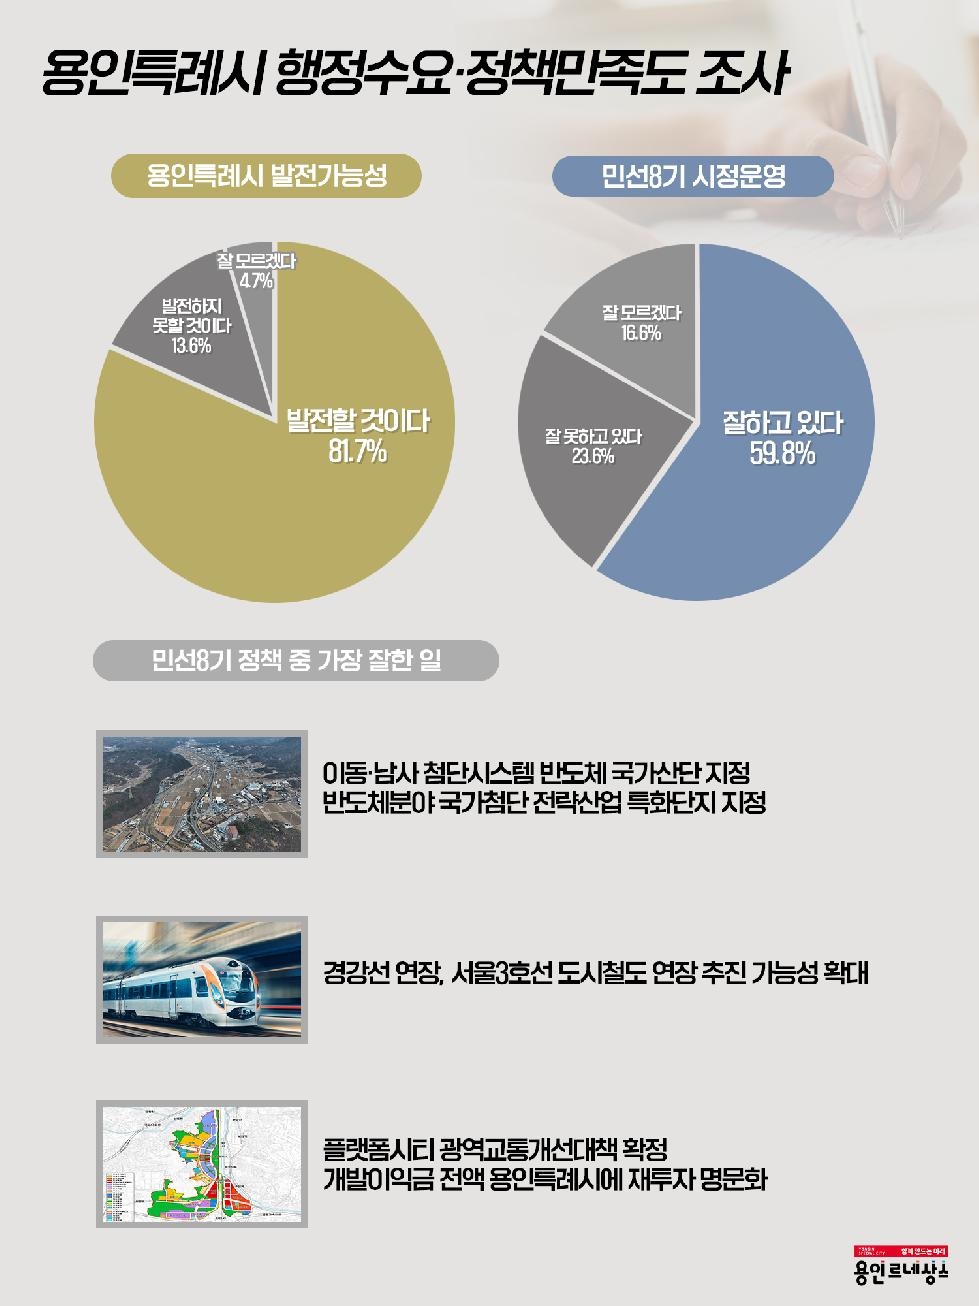 용인시, 시민 81.7% “용인 발전할 것” 긍정 평가